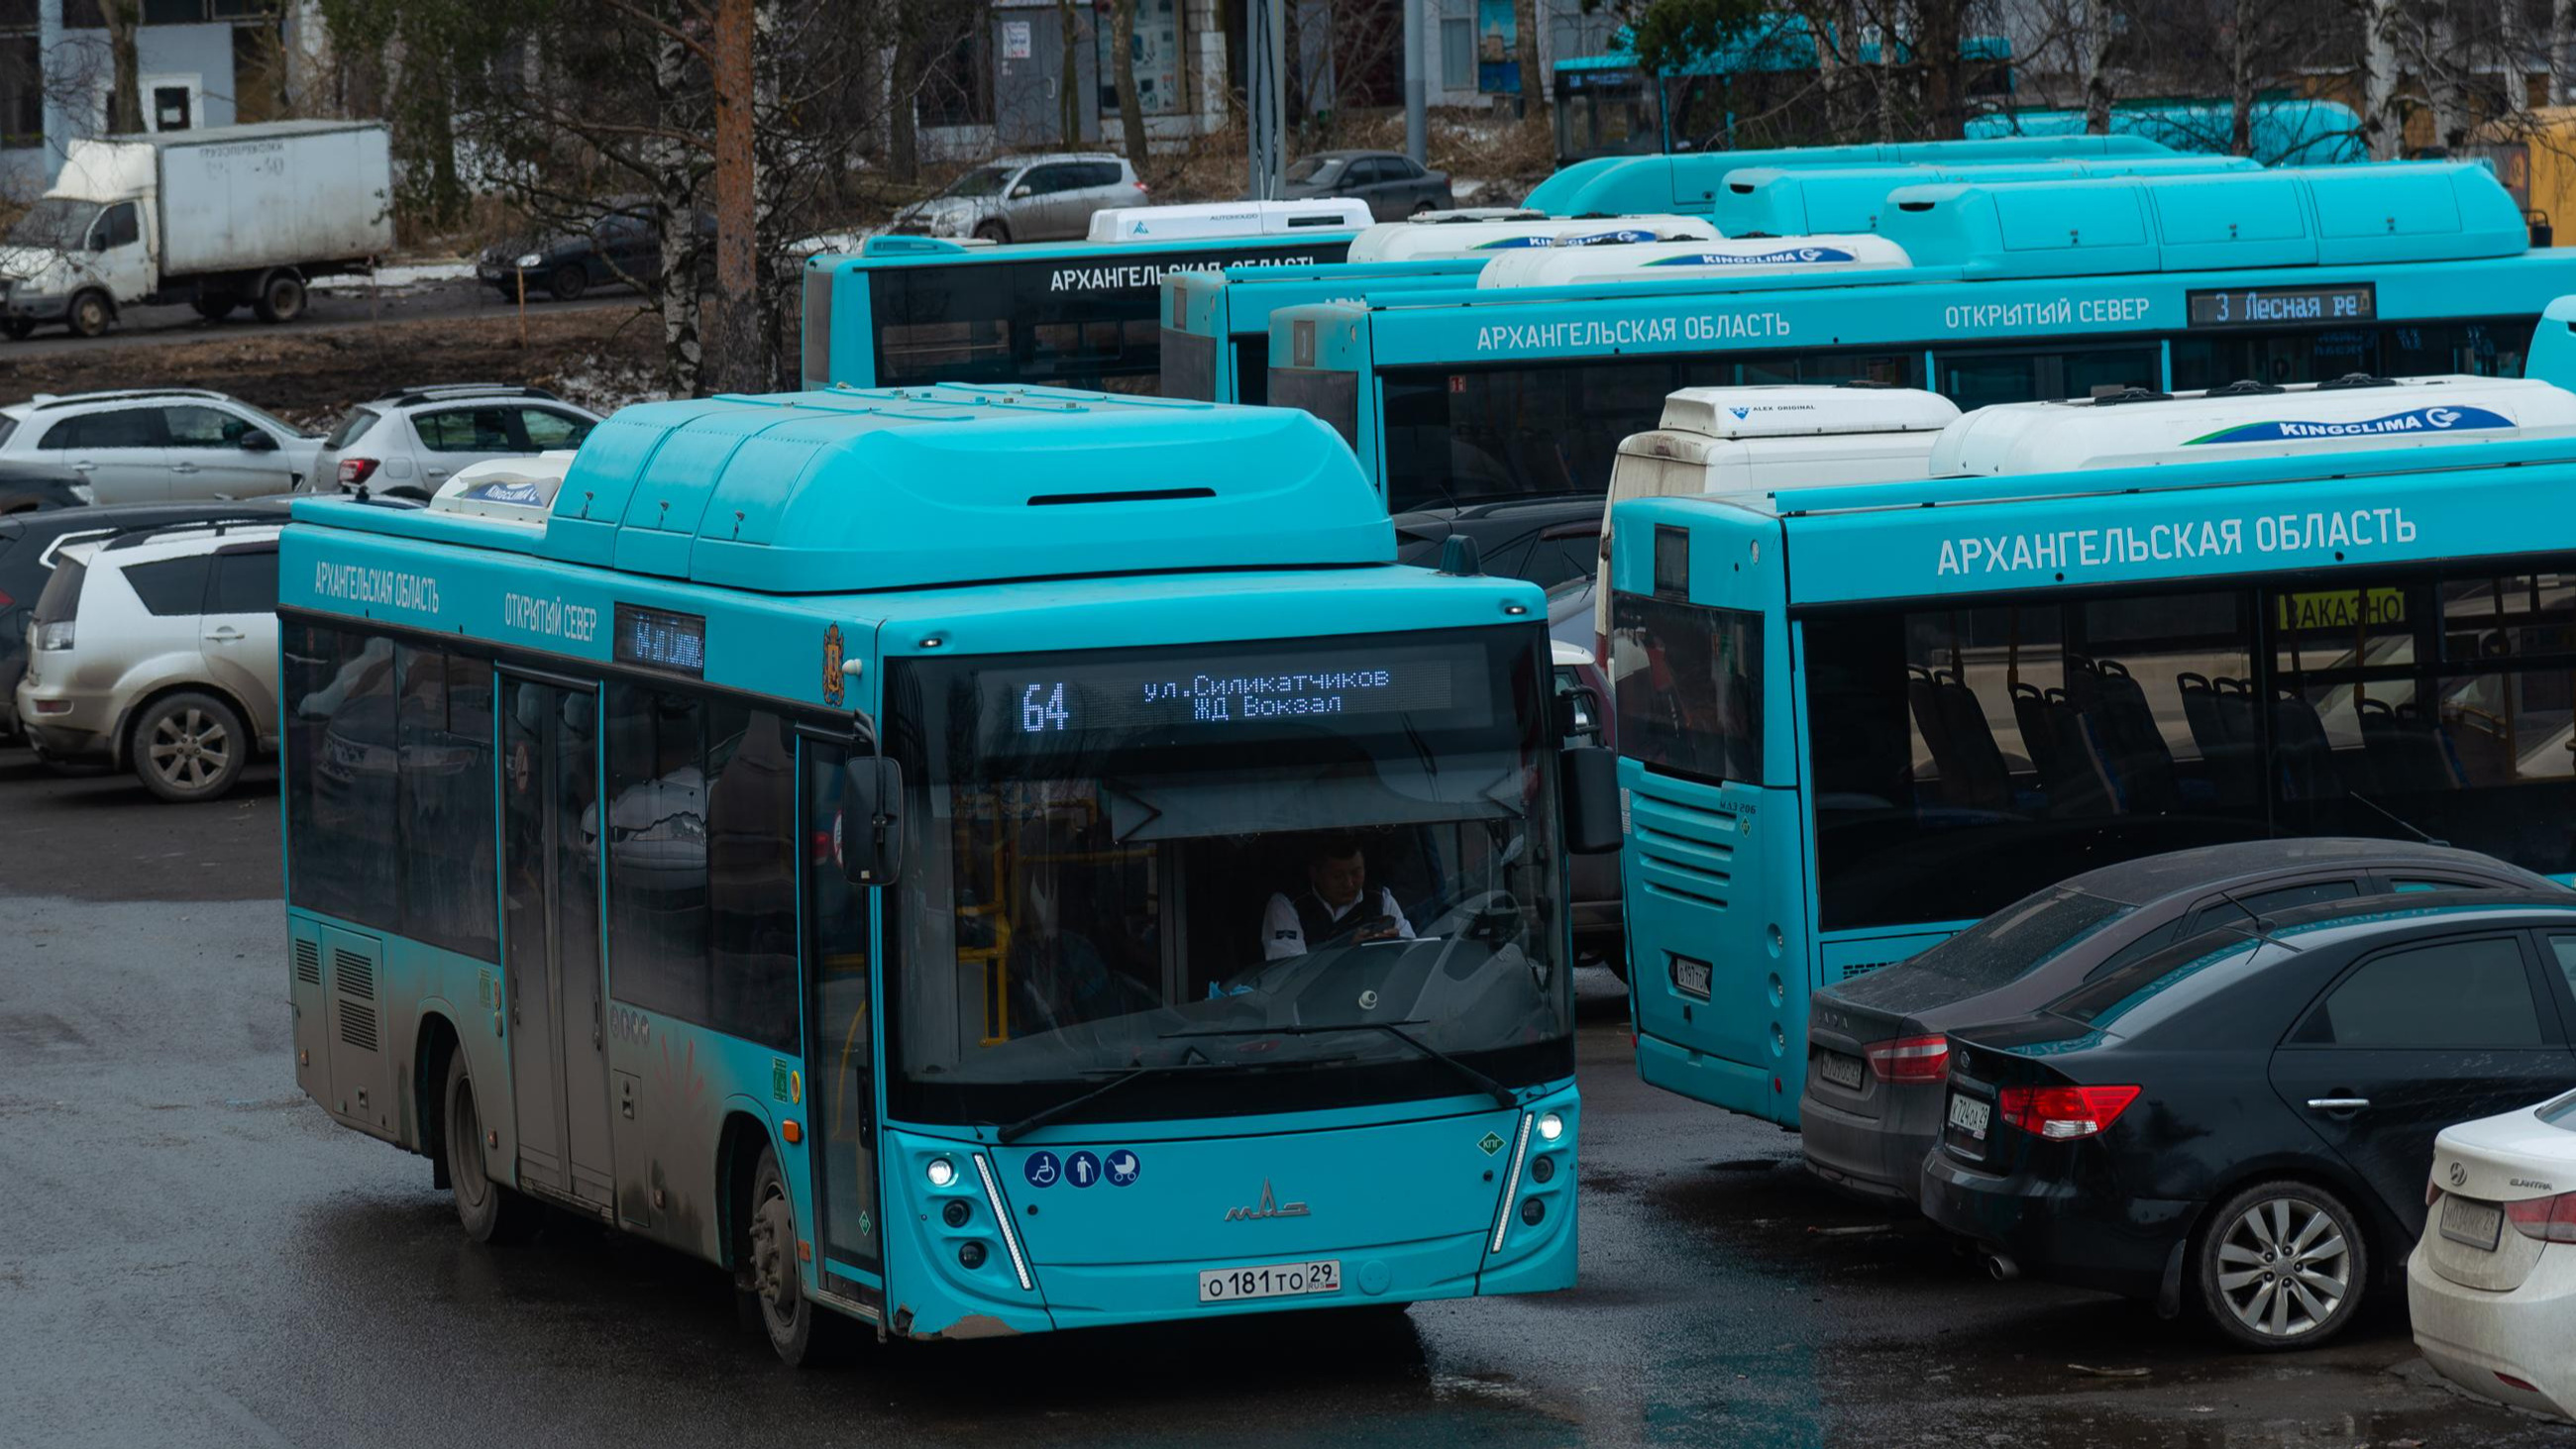 «Должны заводиться в любой мороз»: глава Архангельска рассказал, как готовят автобусы к холодам